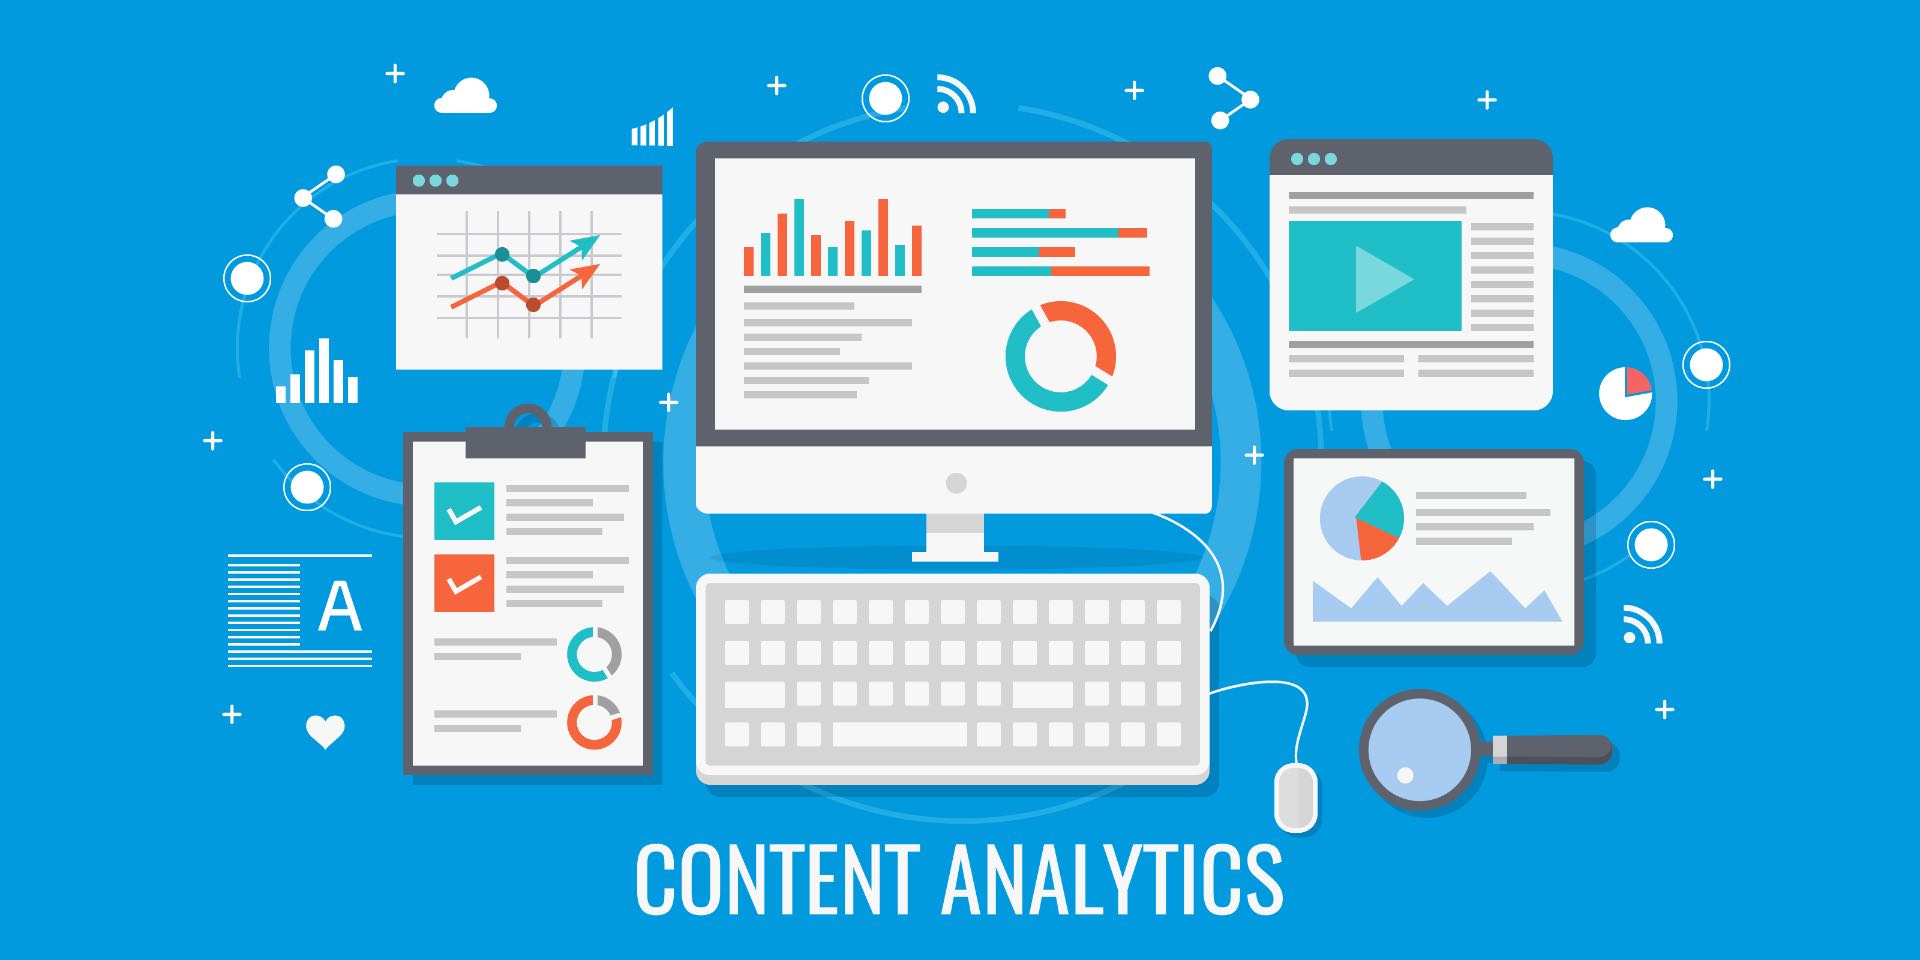 Content analytics